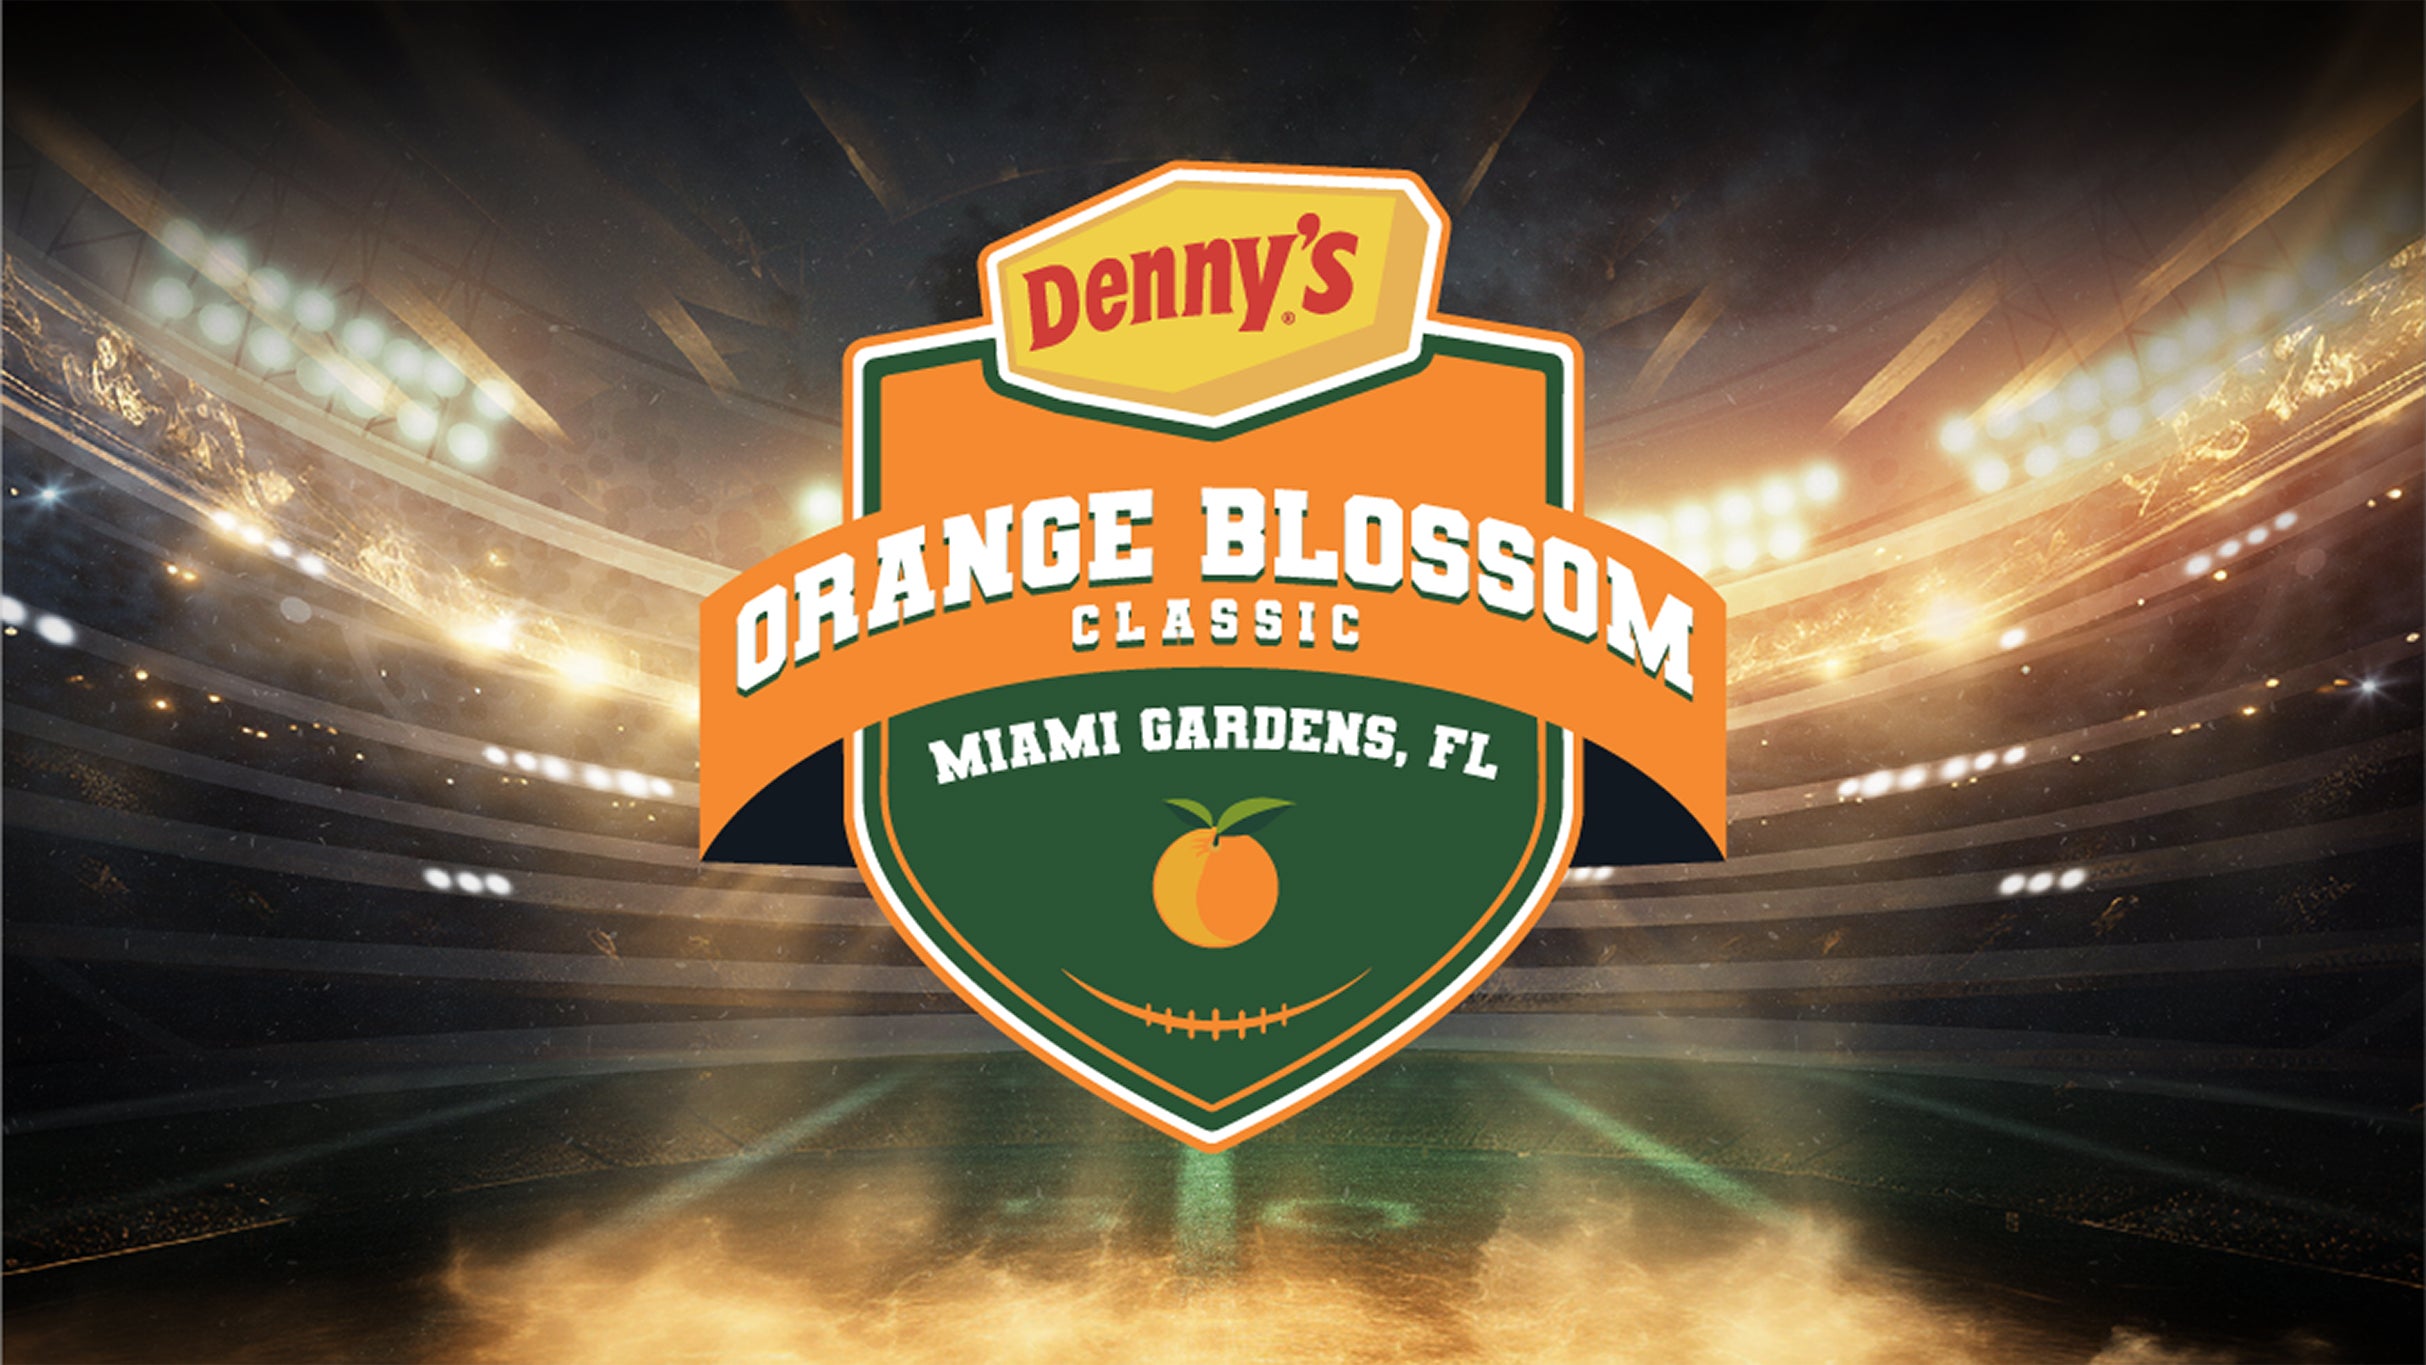 Denny's Orange Blossom Classic pre-sale password for advance tickets in Miami